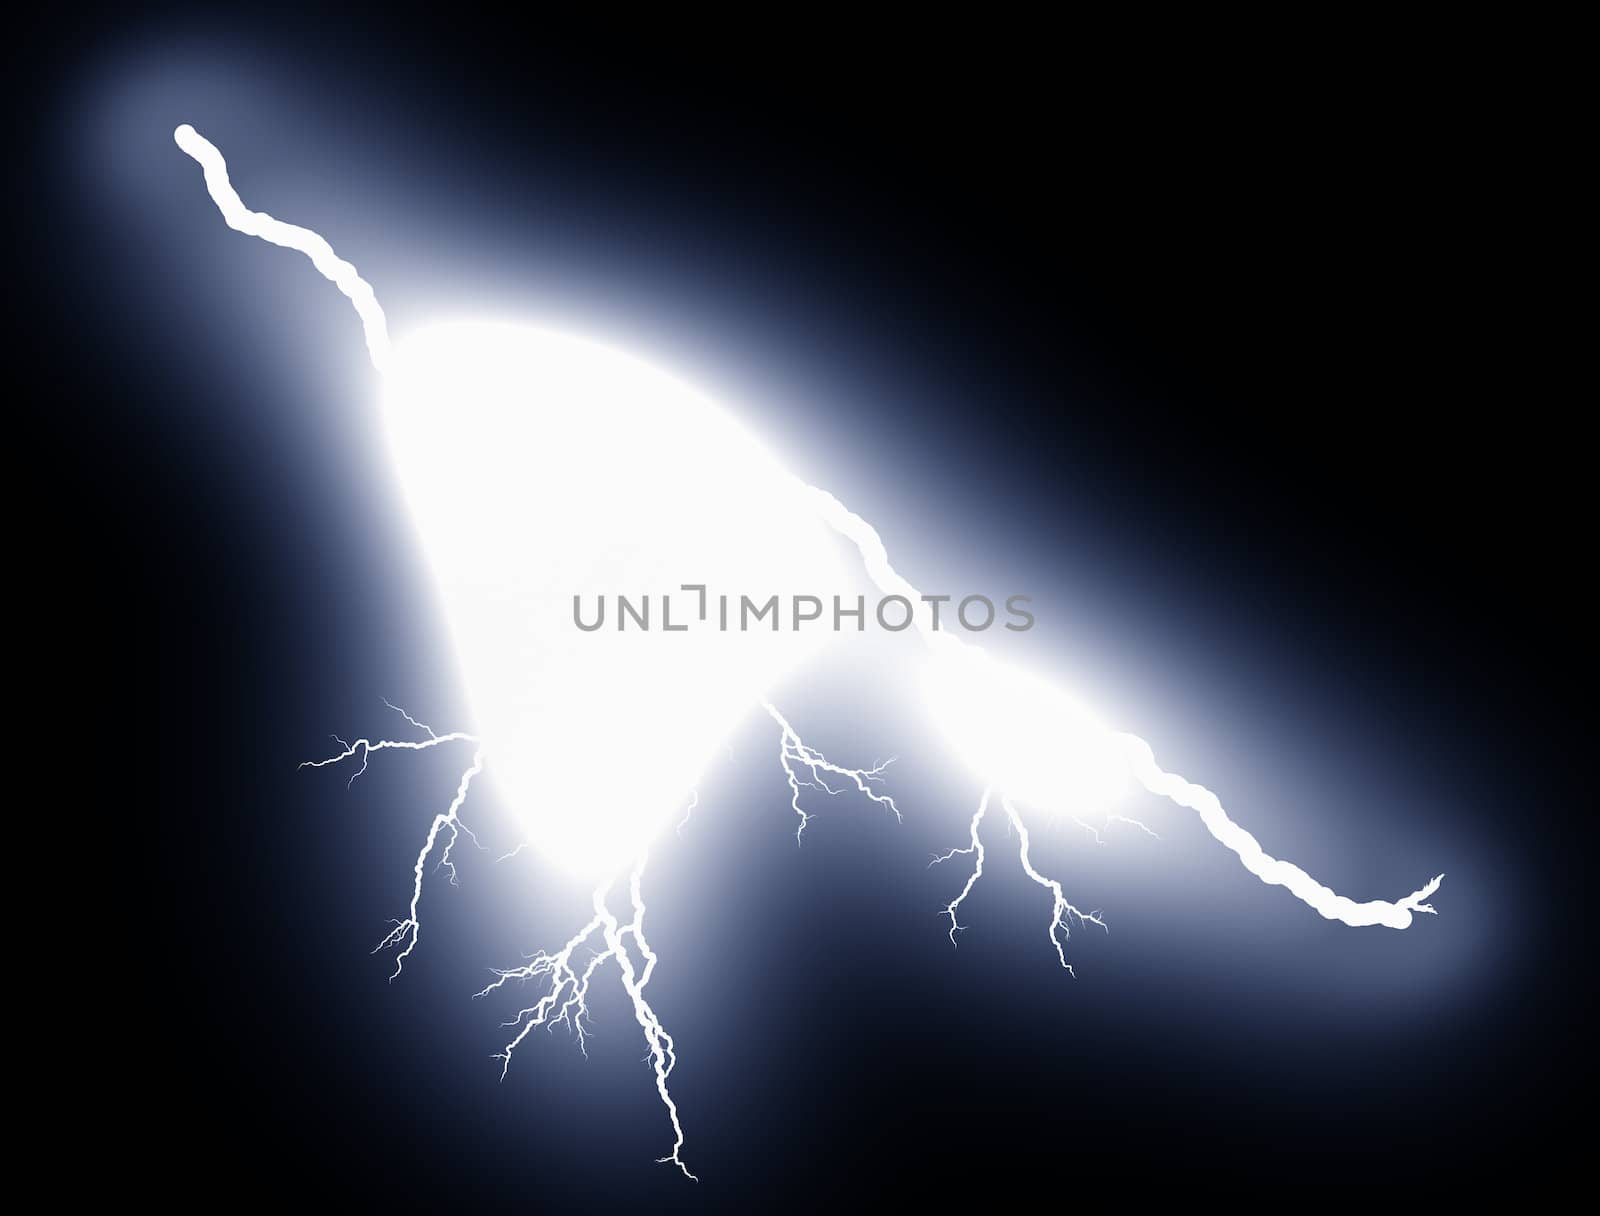 Lightning bolt at night by sfinks